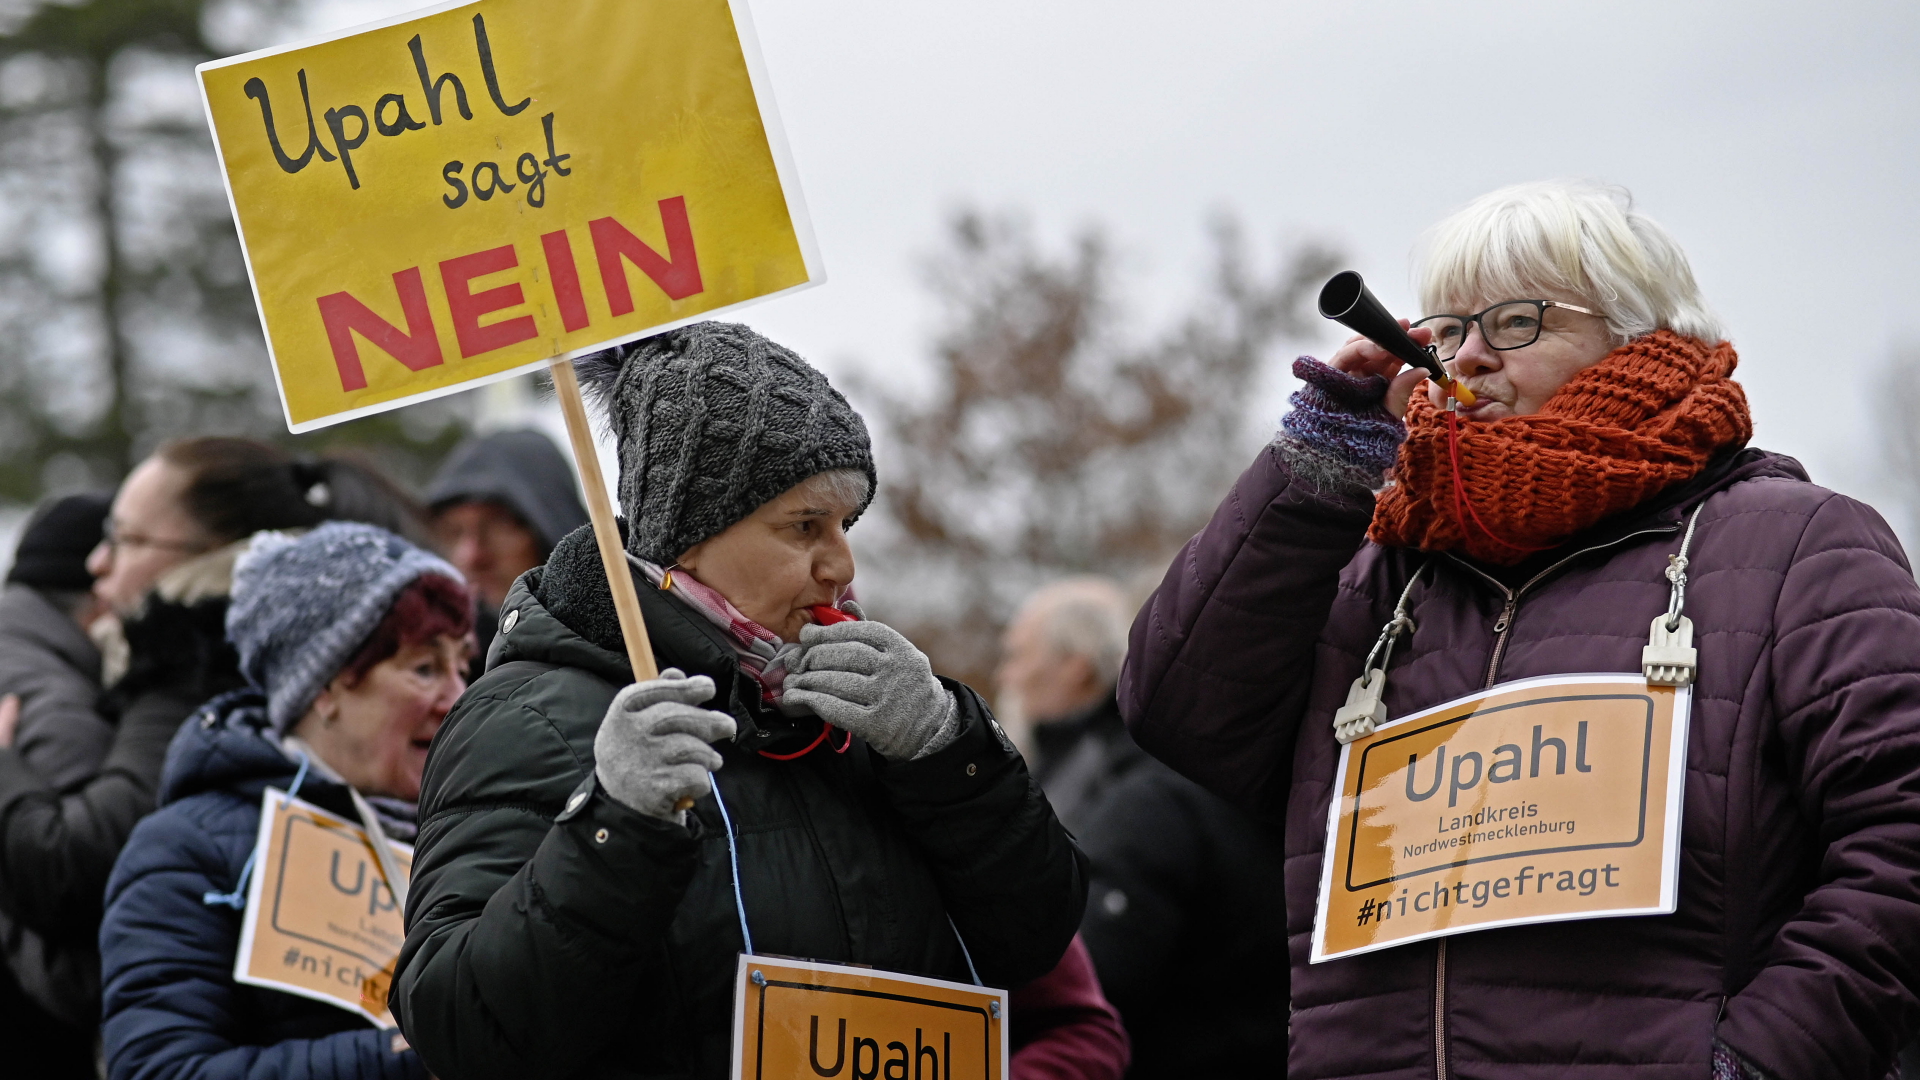 Menschen demonstrieren mit Schildern mit der Aufschrift "Upahl sagt nein" und "Upahl #nichtgefragt" gegen eine geplante Flüchtlingsunterkunft in Nordwestmecklenburg. | dpa